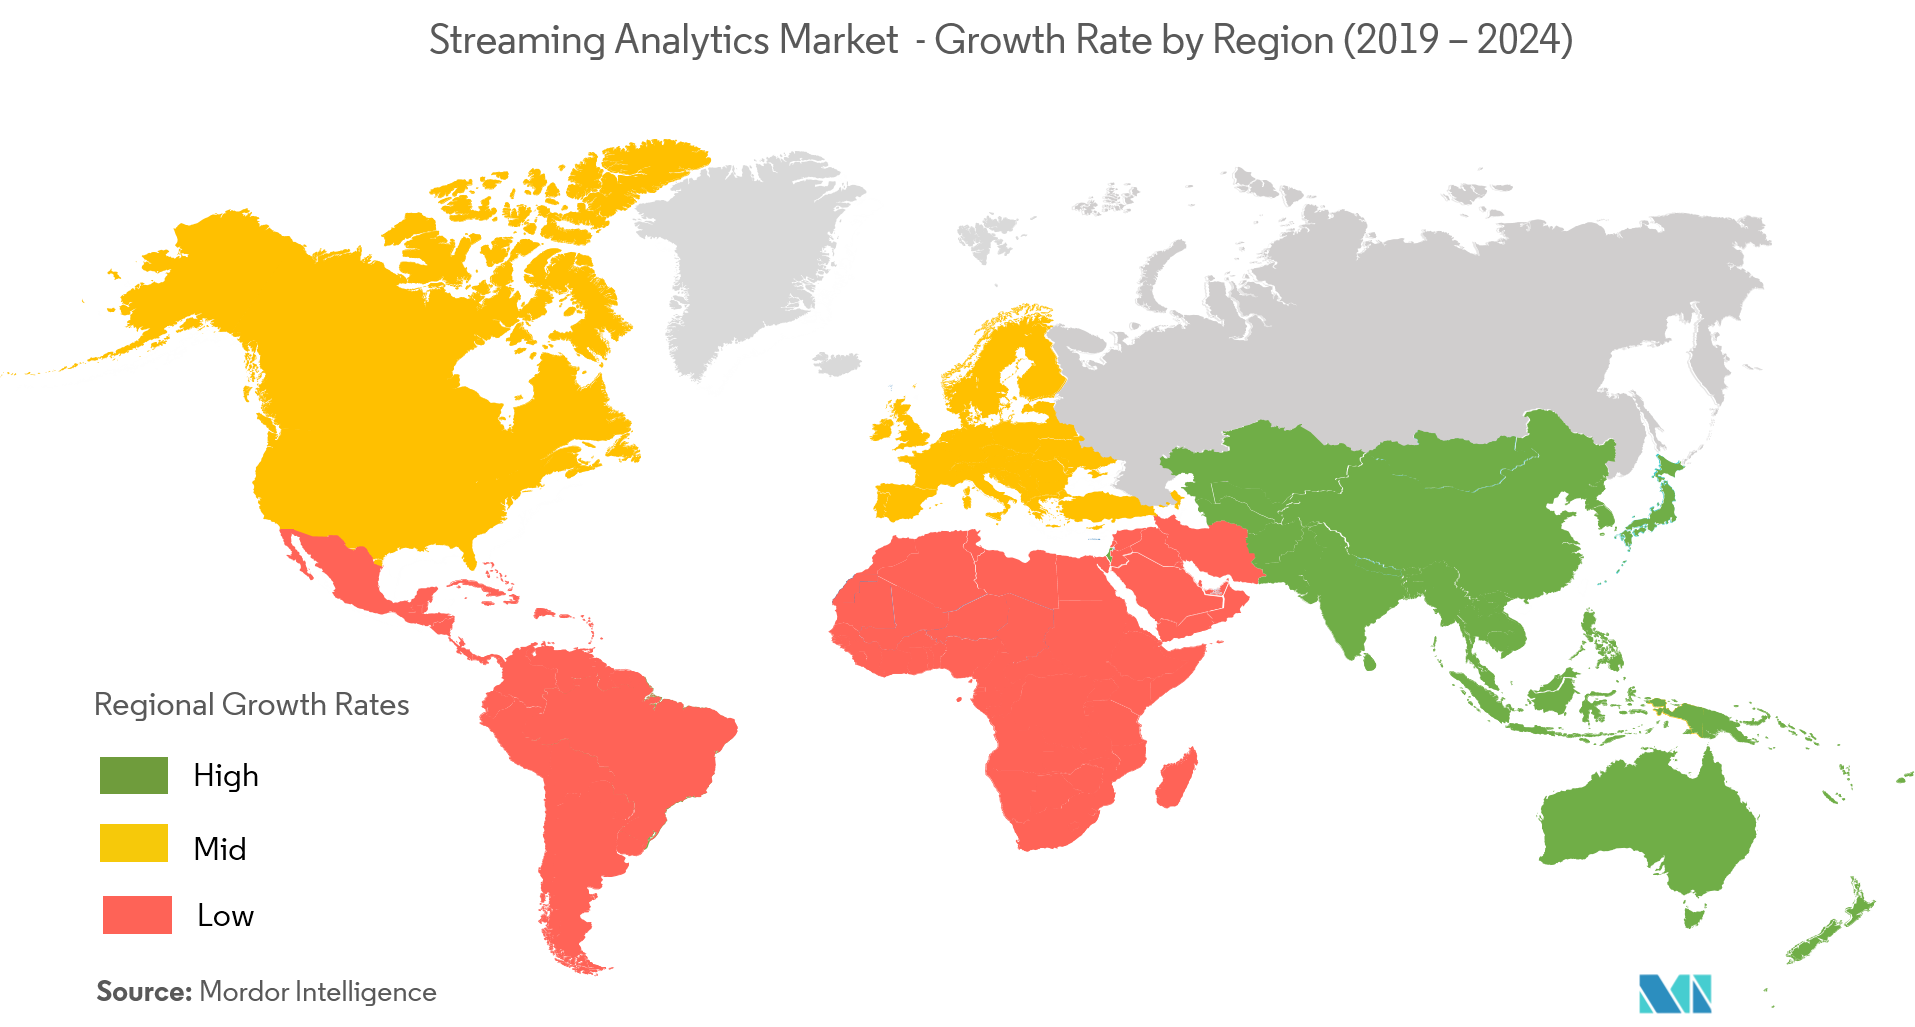 流媒体分析市场 - 按地区划分的增长率（2019 - 2024）